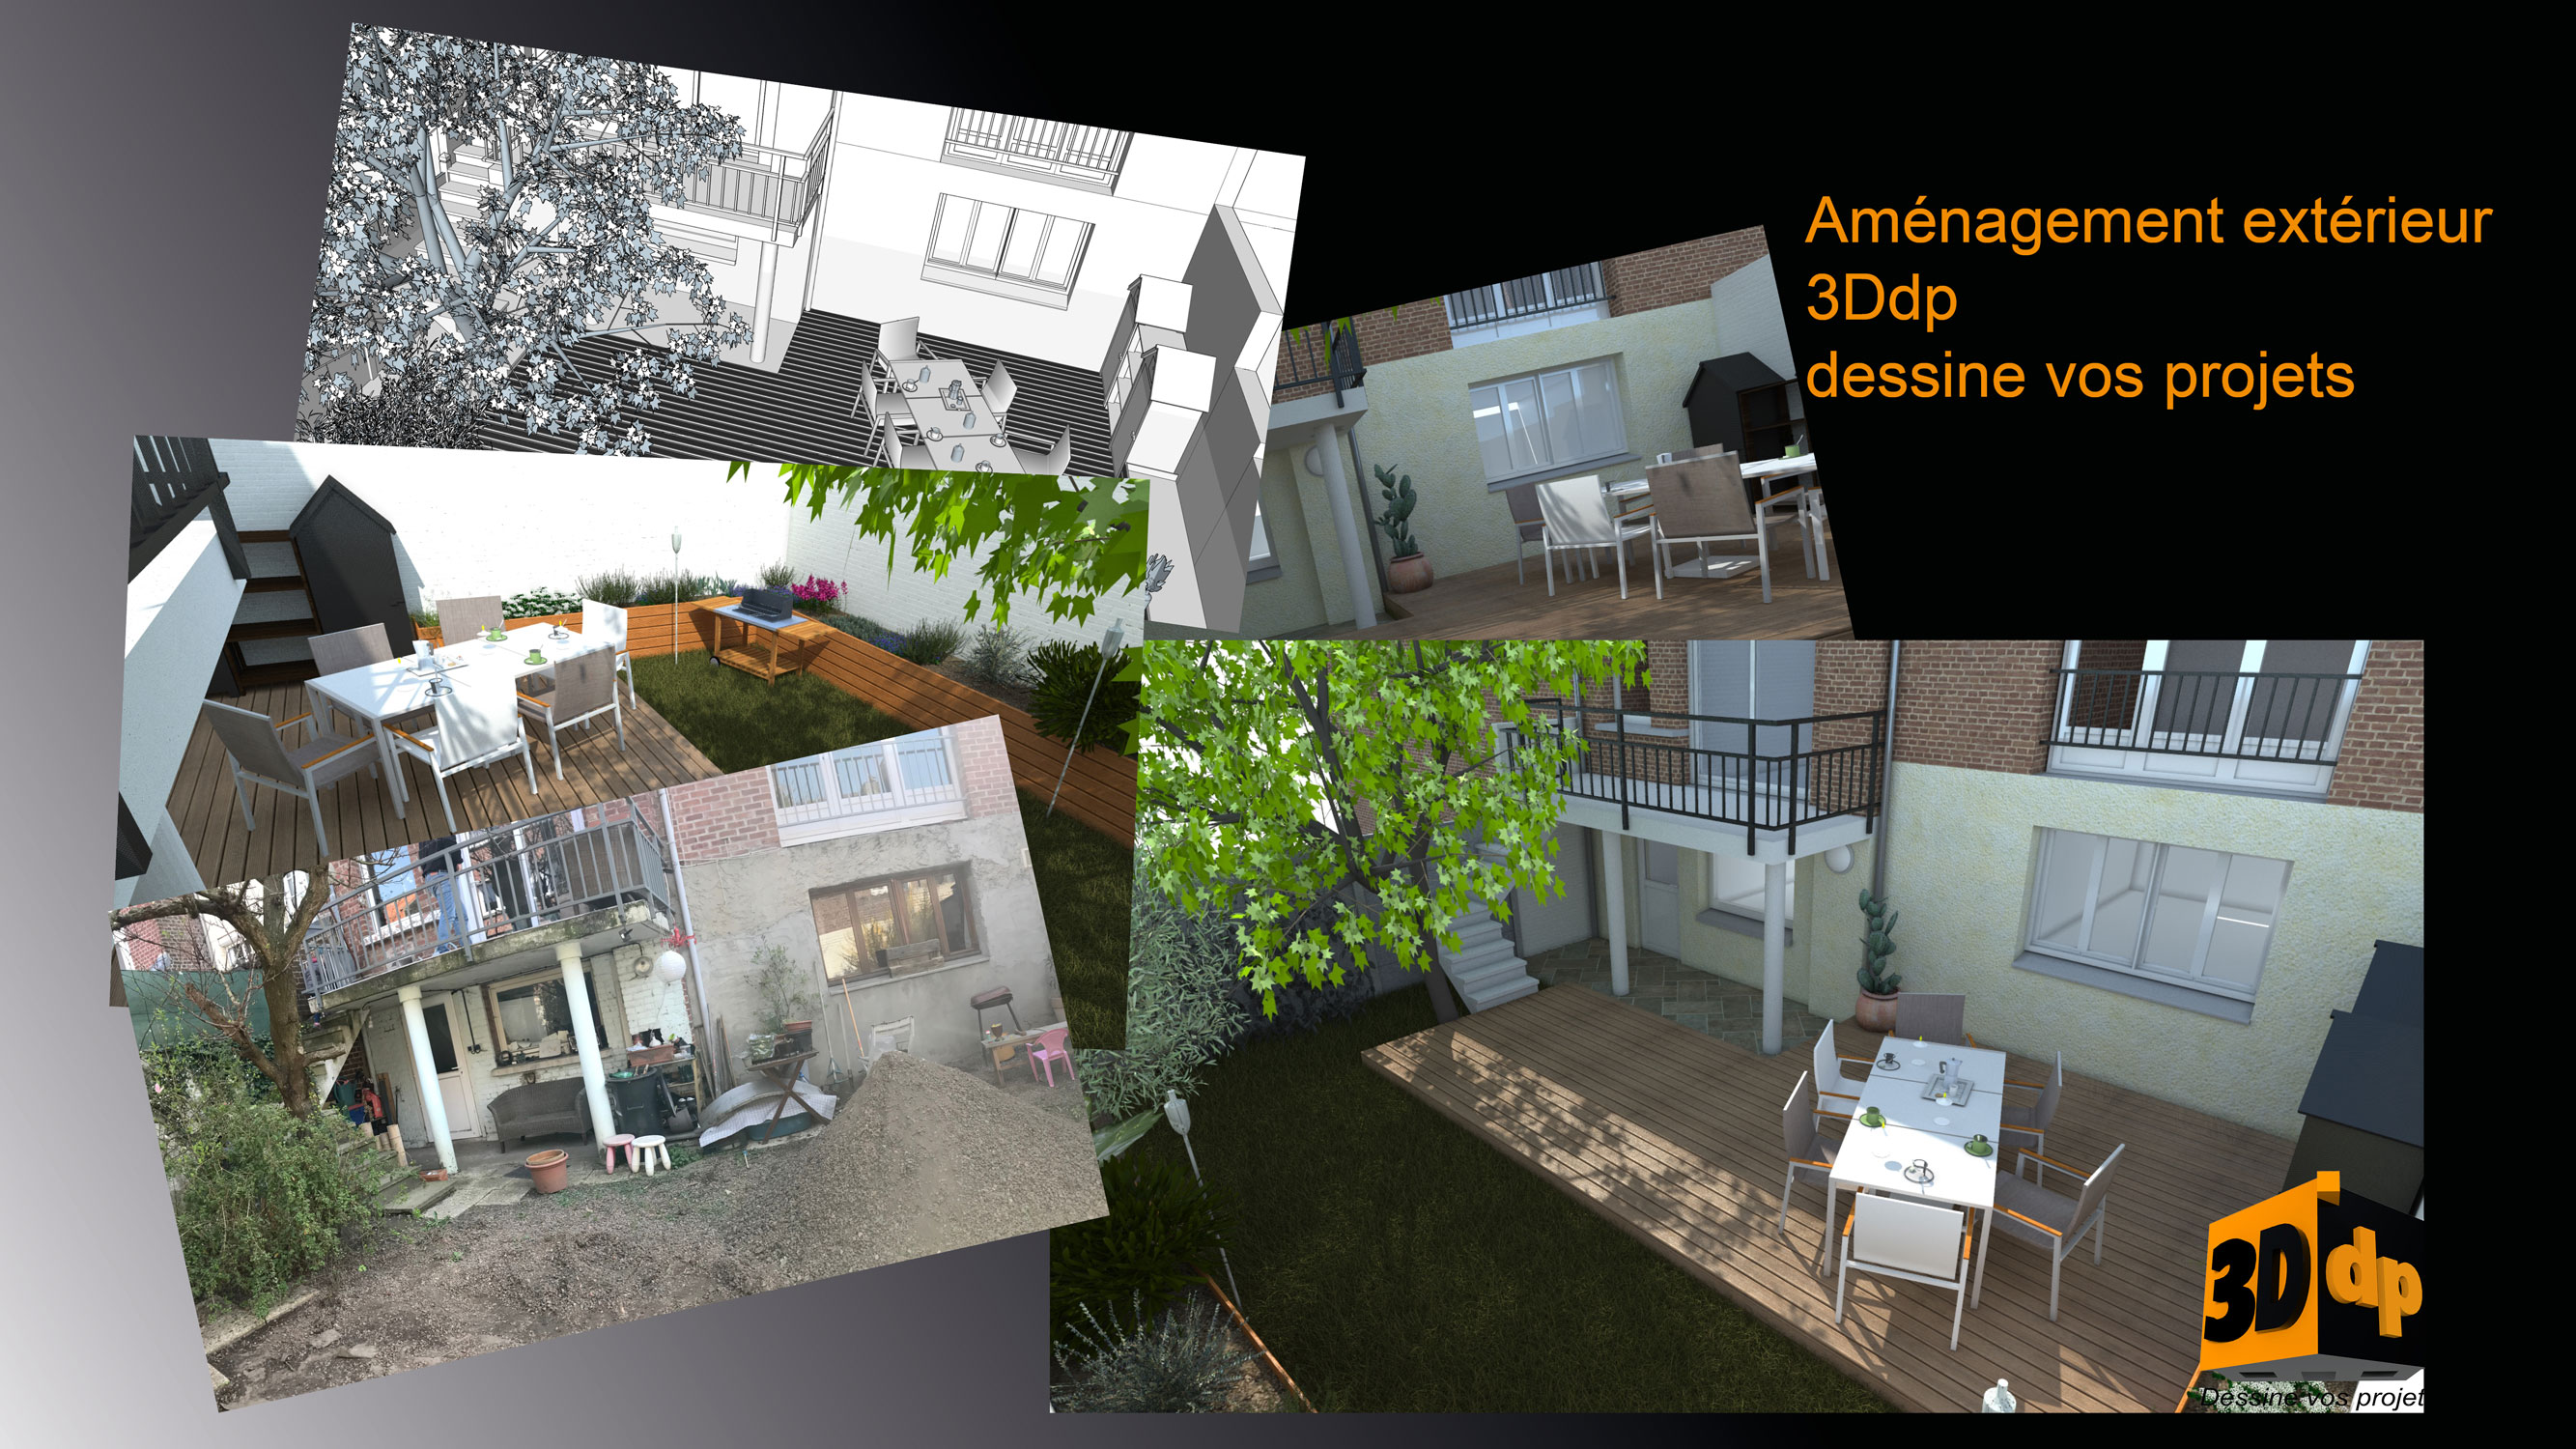 3Ddp, plans et aménagement extérieur.